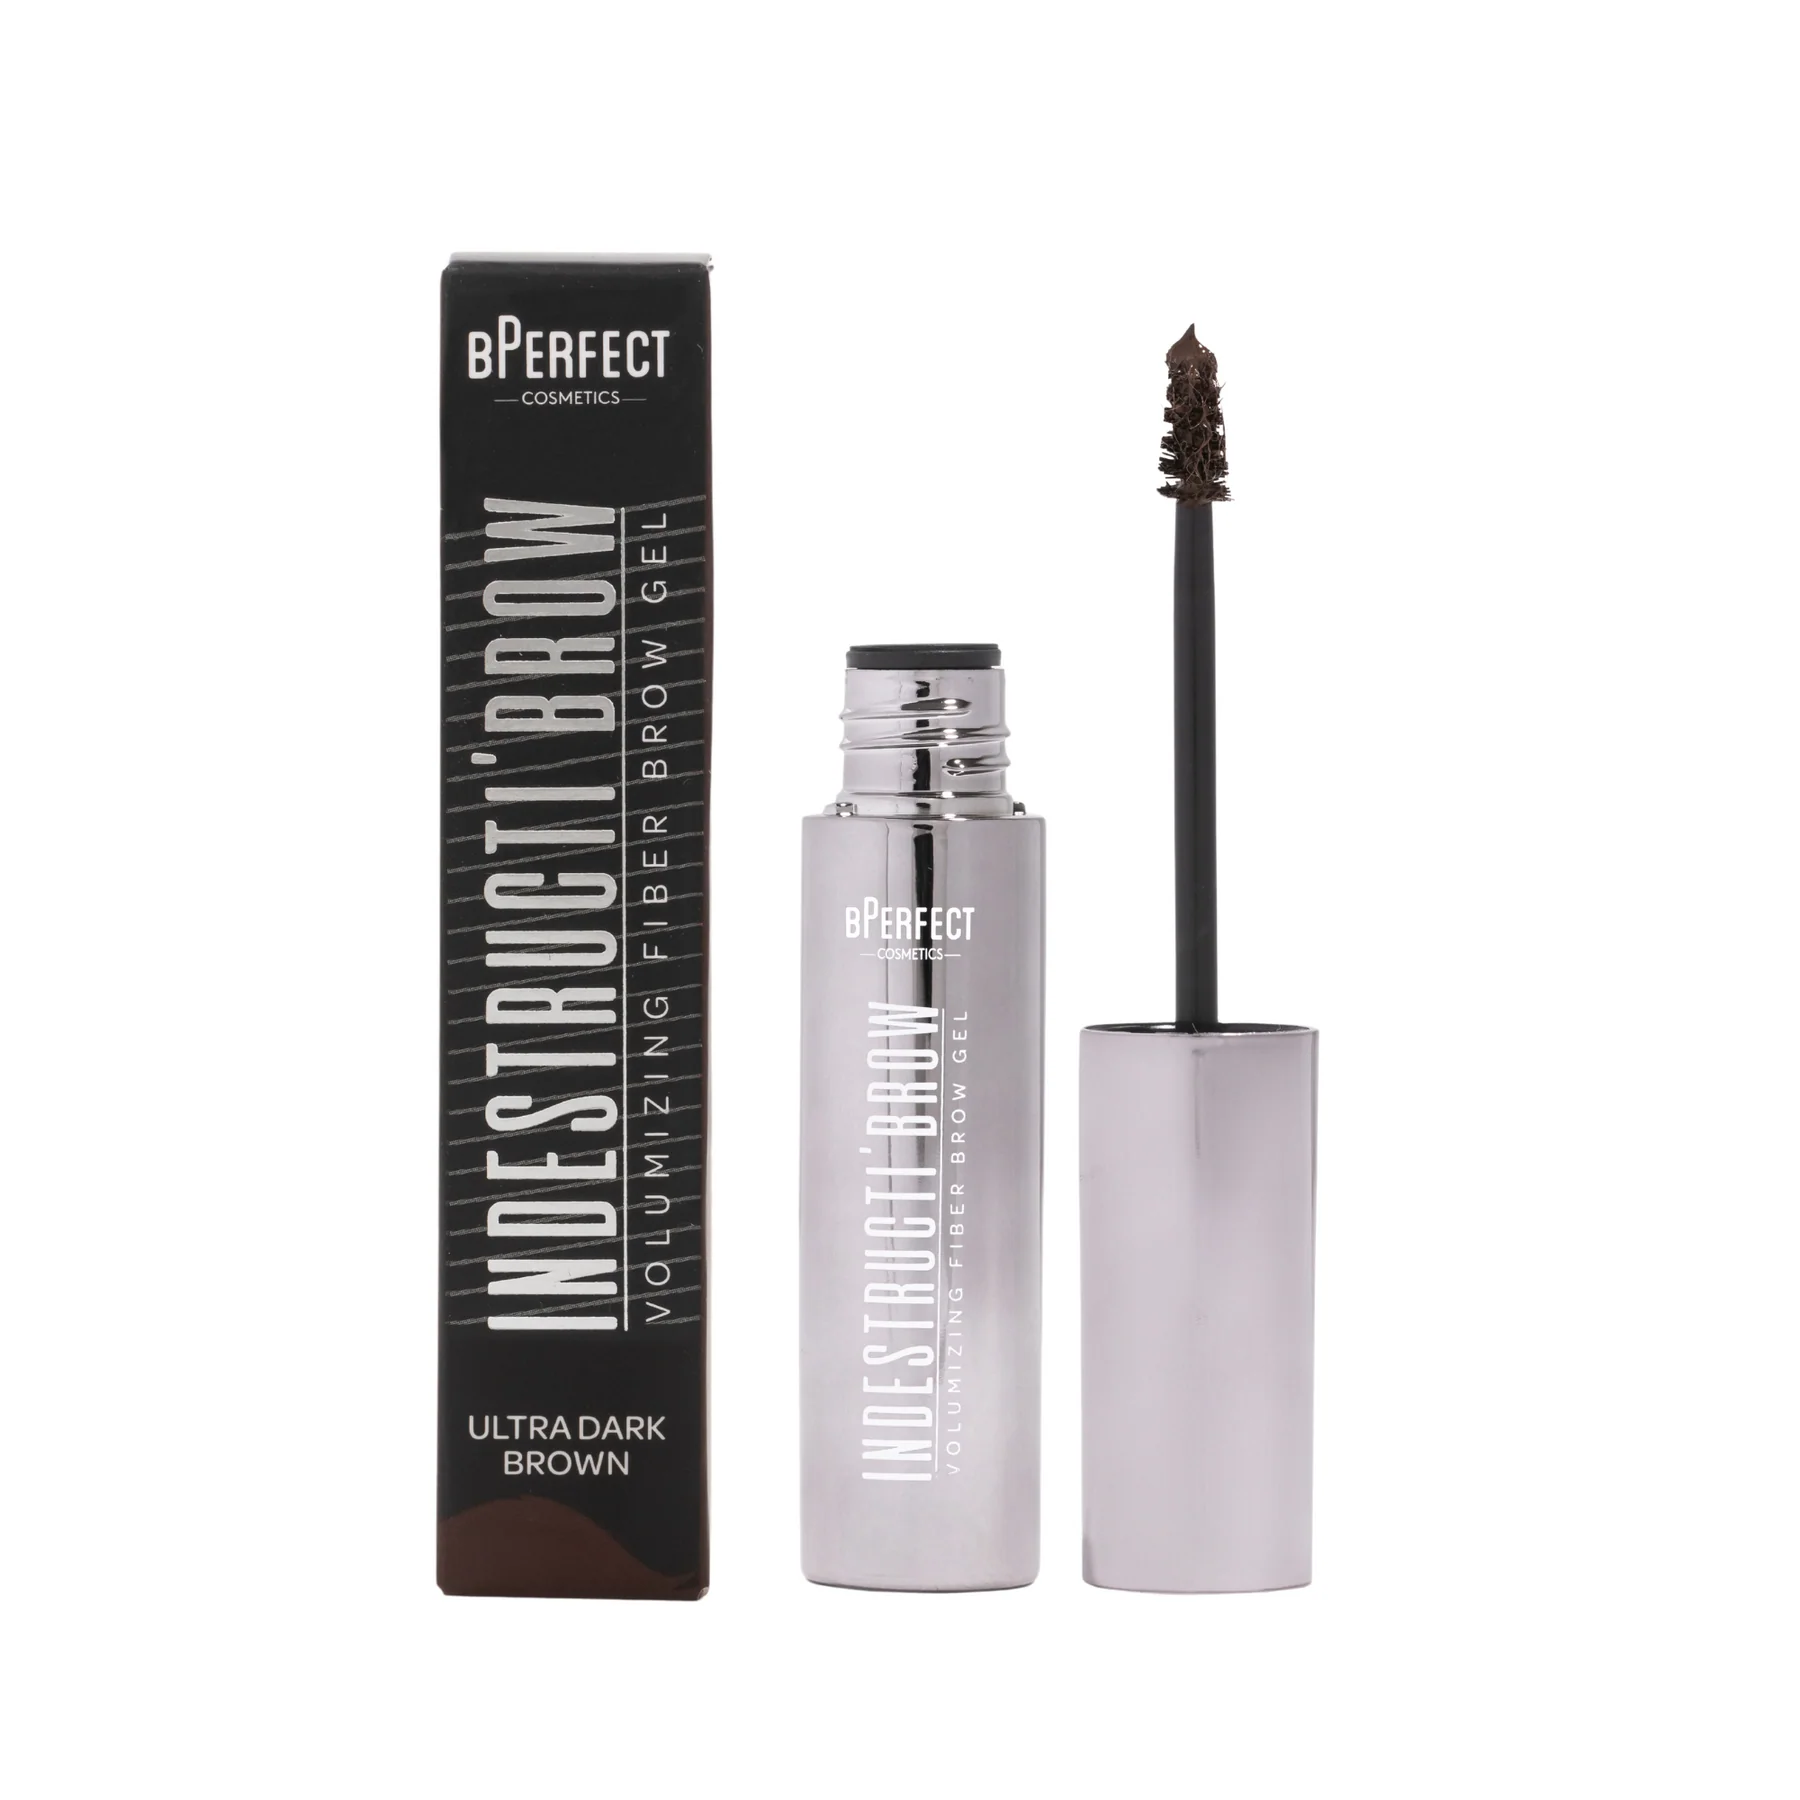 BPerfect Indestructi'Brow - Brow Fiber Gel Mascara Ultra Dark Brown